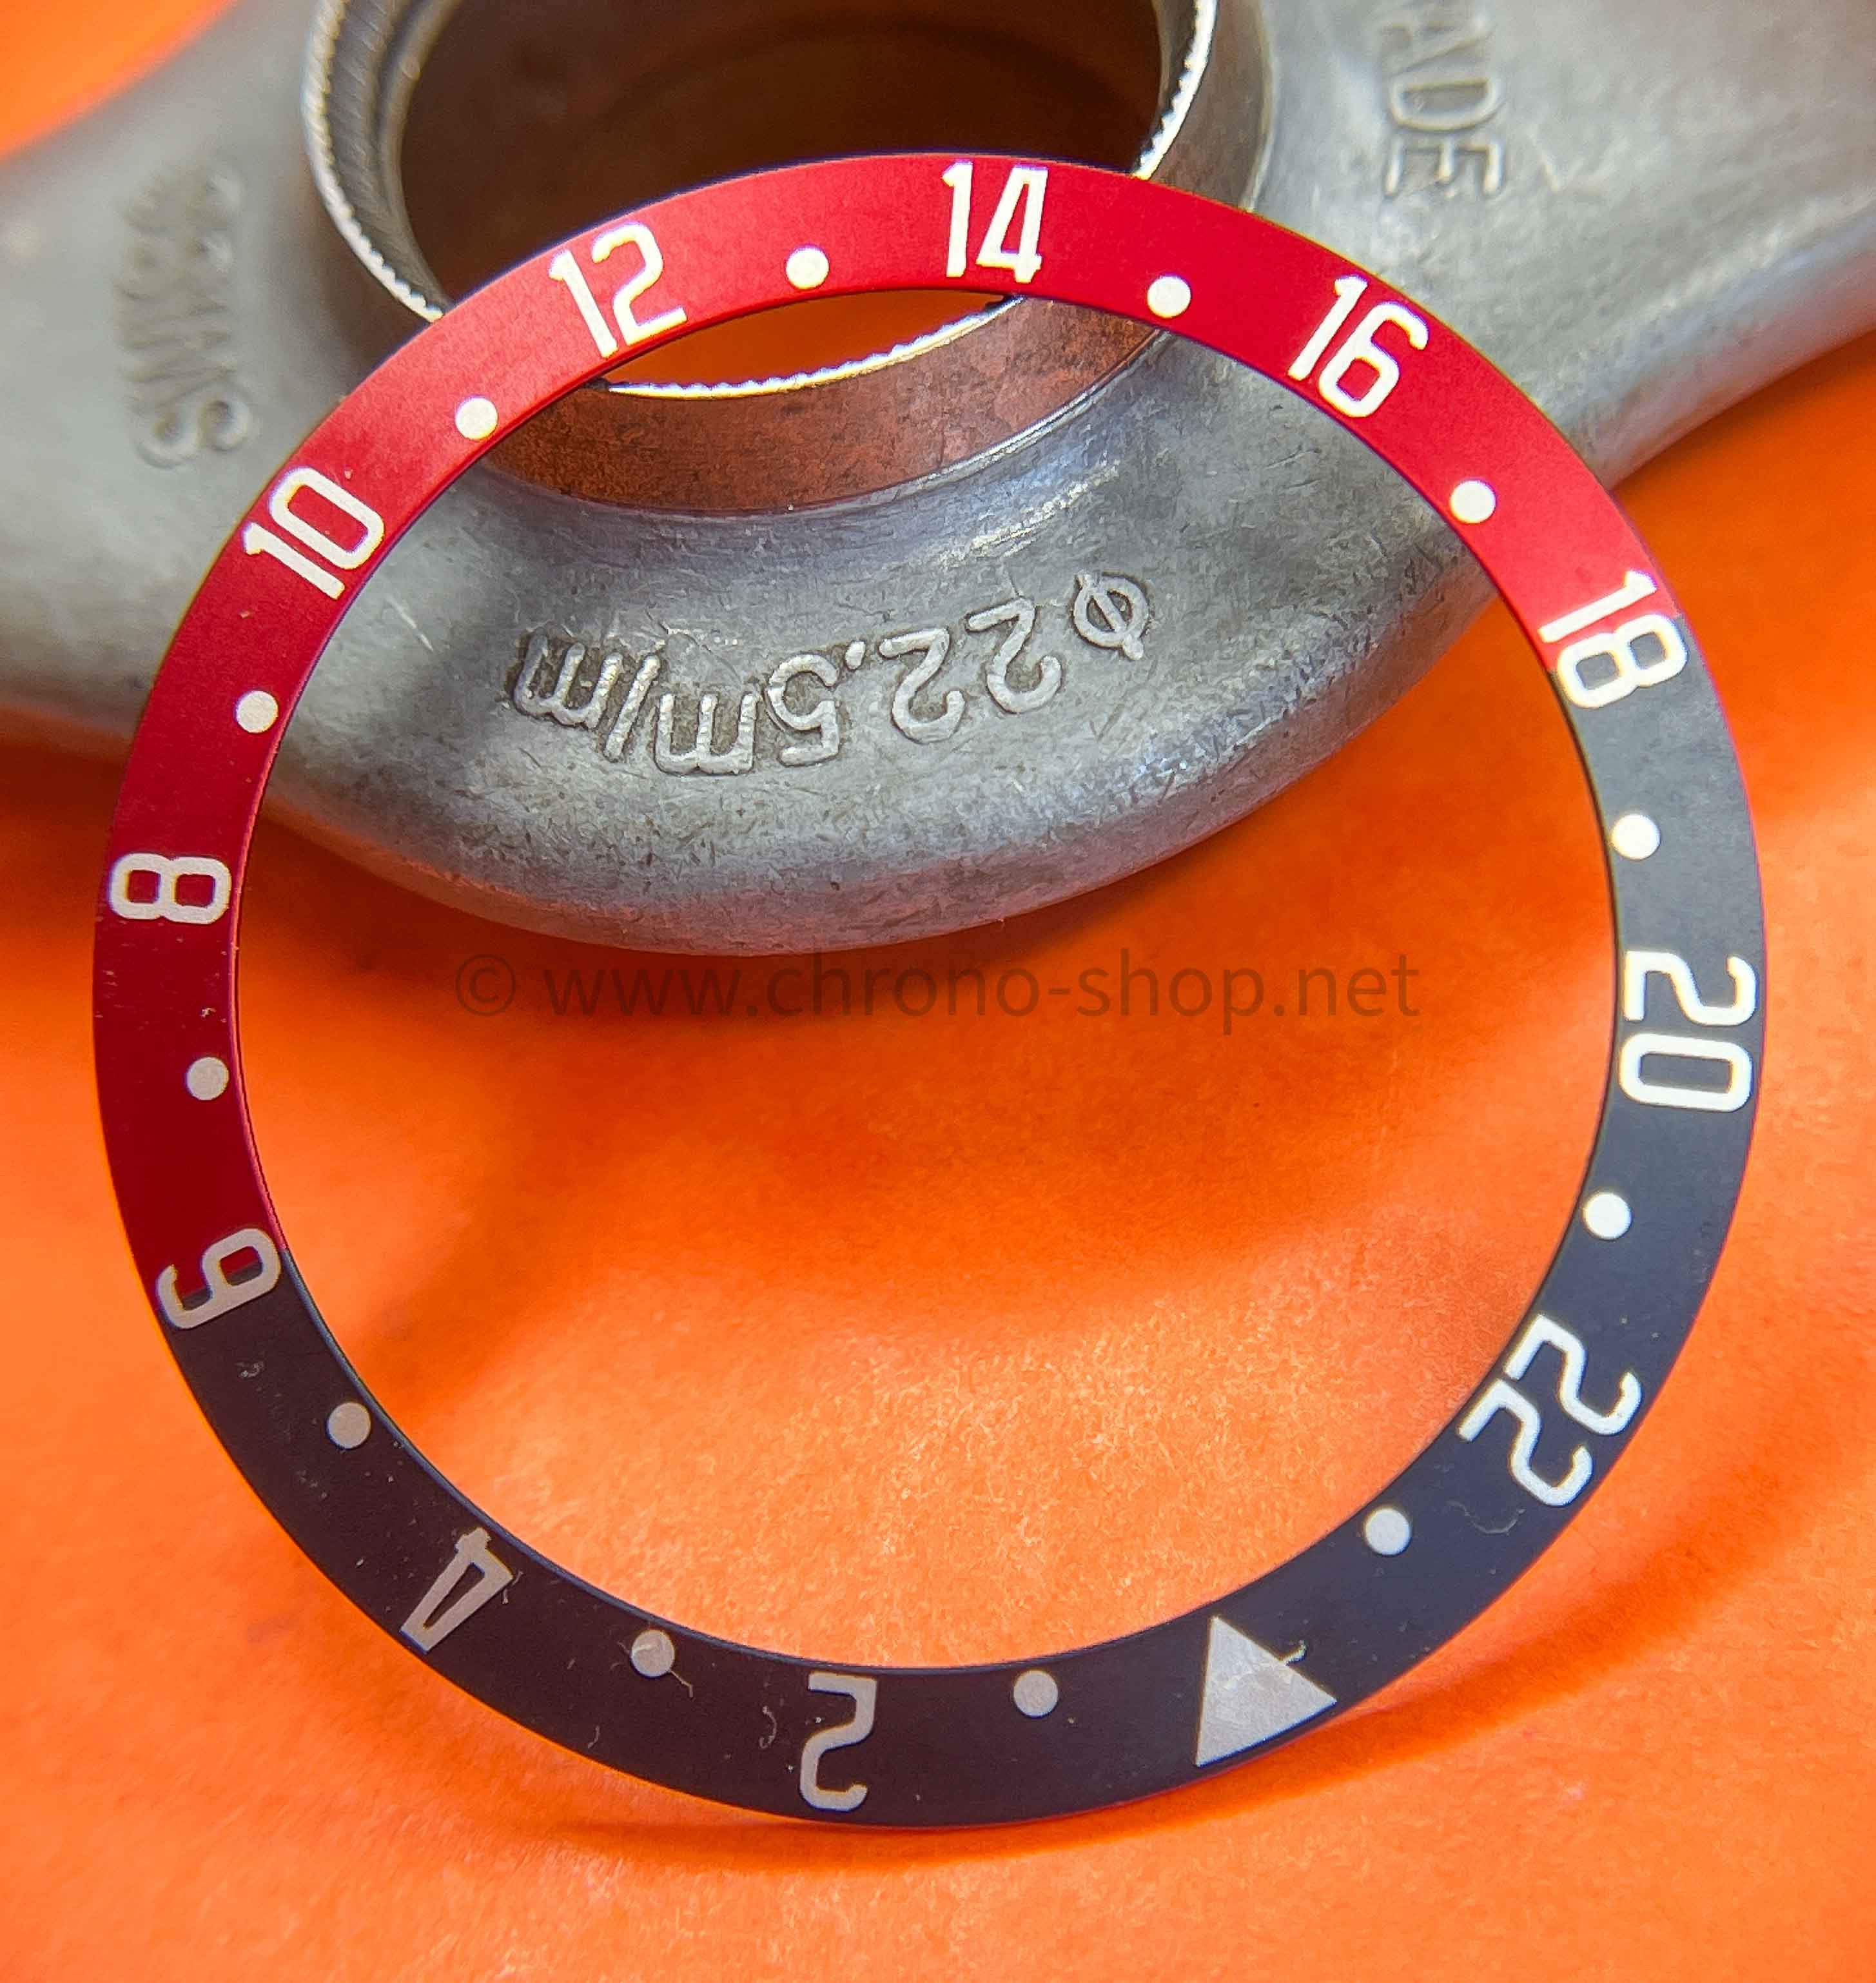 TUDOR pièce détachée horlogerie montres 41mm BLACK BAY GMT 79830 insert disque aluminium éloxé bordeaux & bleu gradué 24 heures